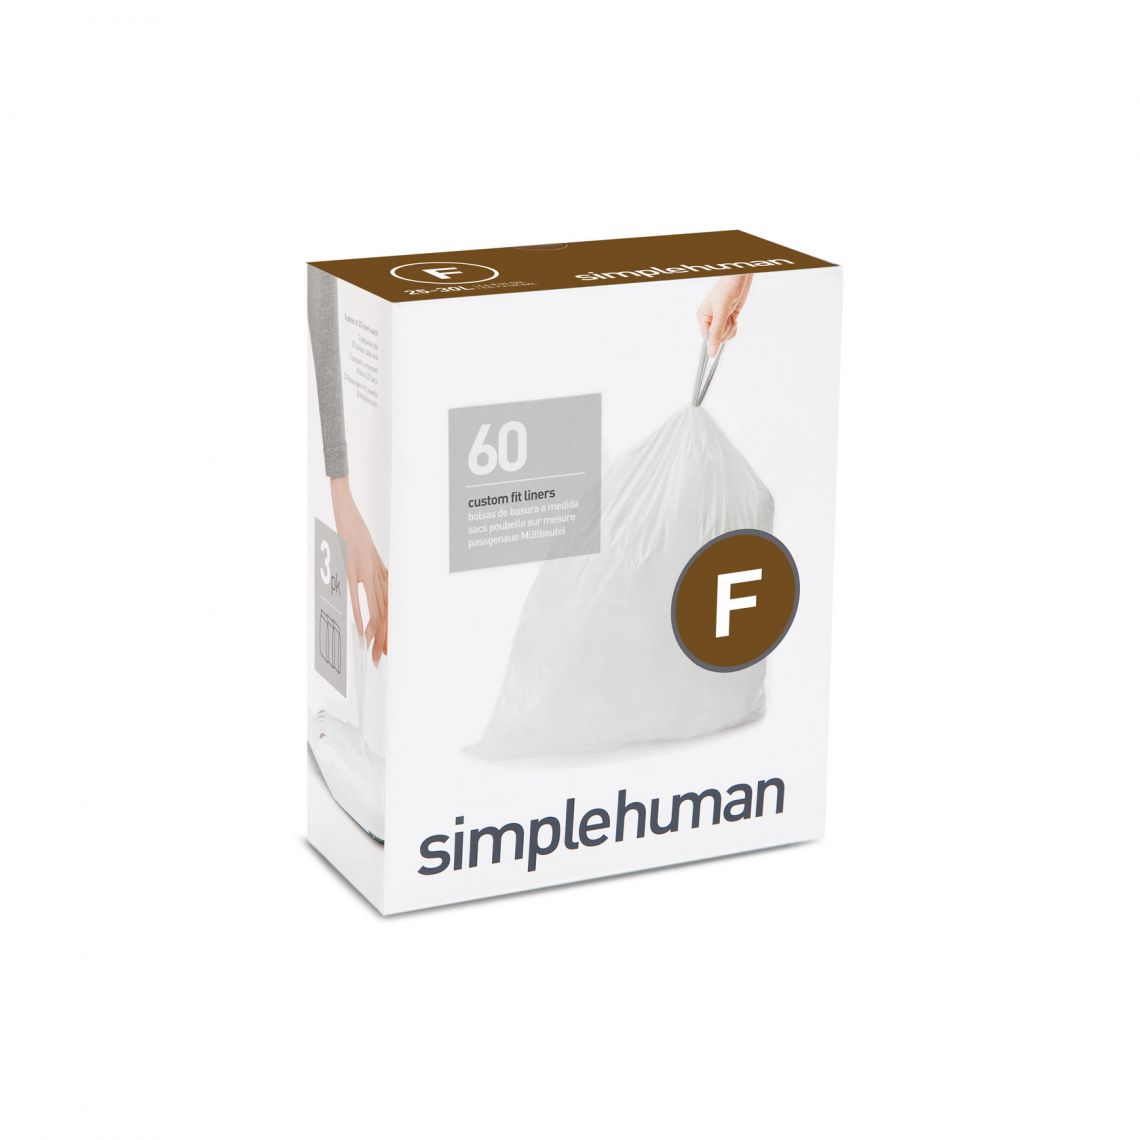 שקיות אשפה לפח 25 ליטר (F) דגם Simplehuman - CW0256 - סימפליומן